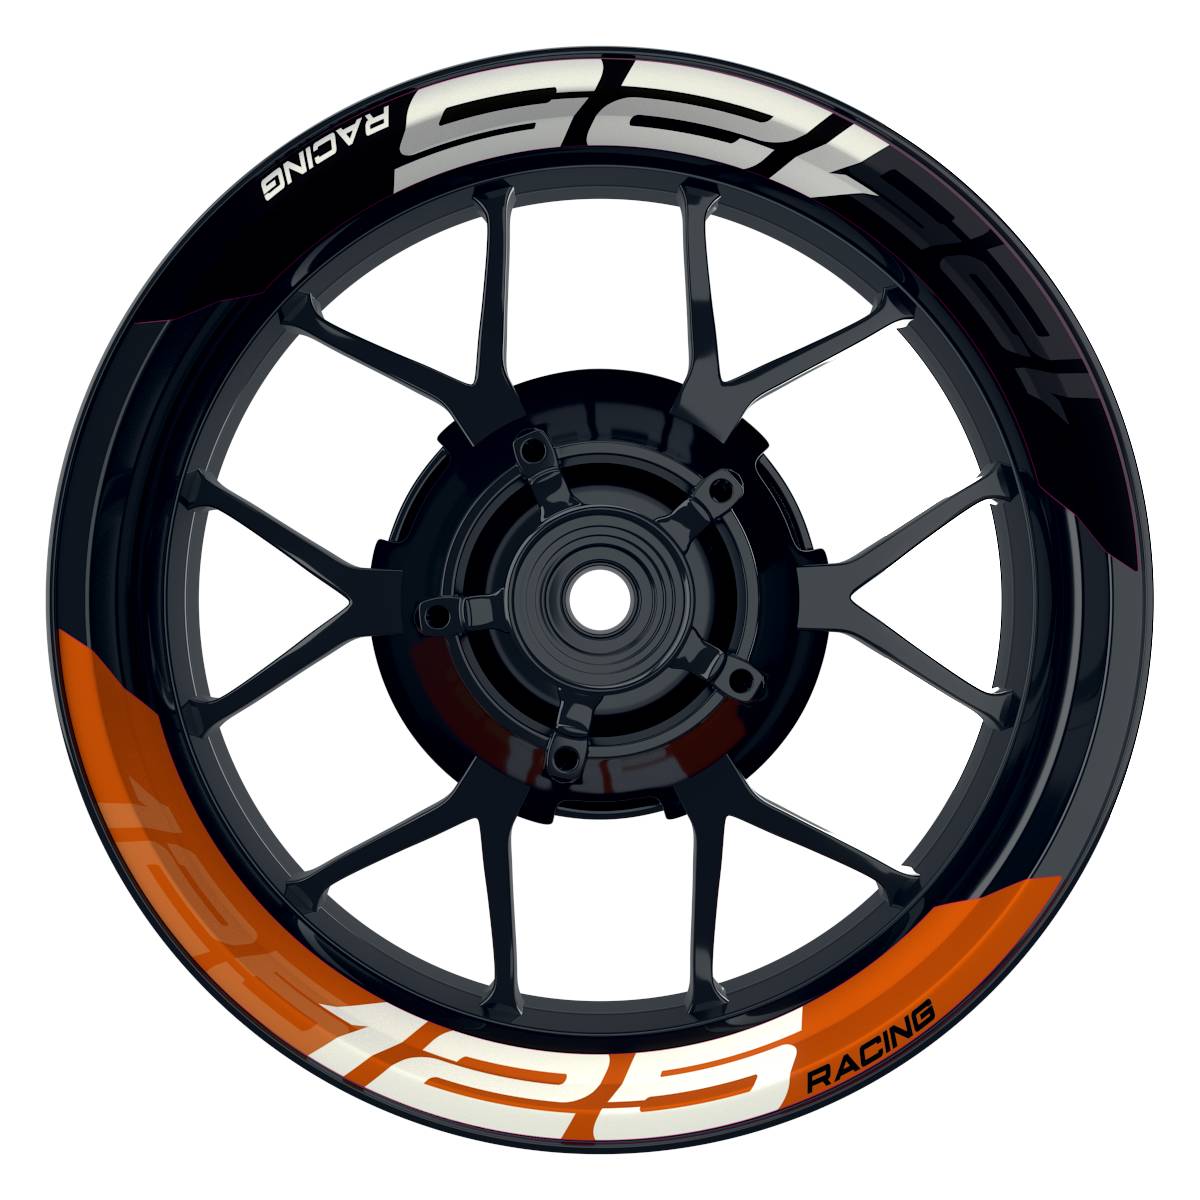 Wheelsticker Felgenaufkleber KTM Racing 125 halb halb V2 schwarz orange Frontansicht